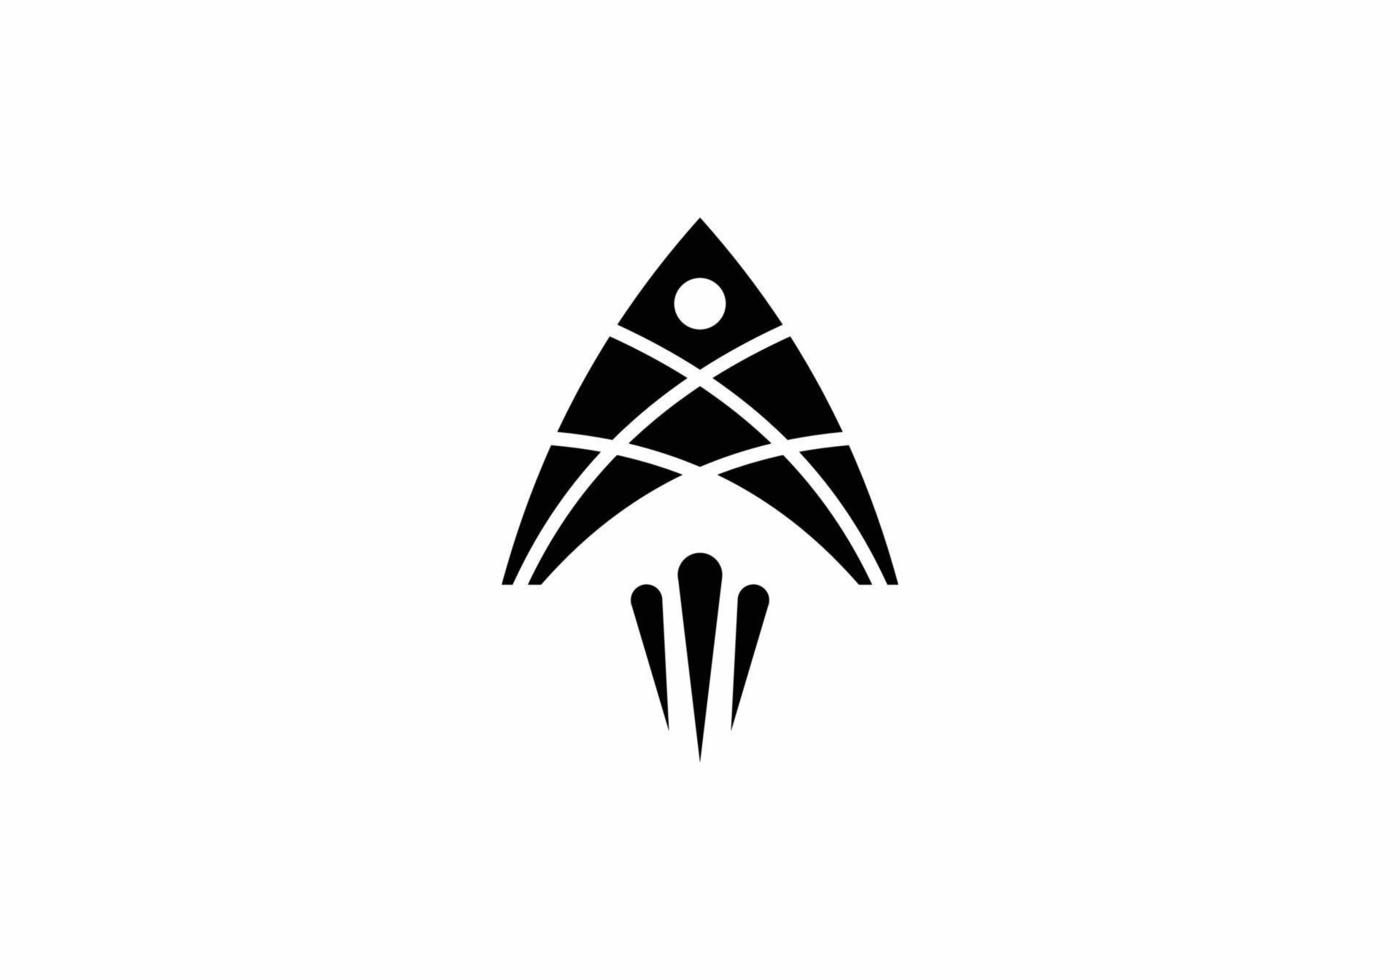 Inspiration für das Design von Raketenfisch-Logosymbolen vektor